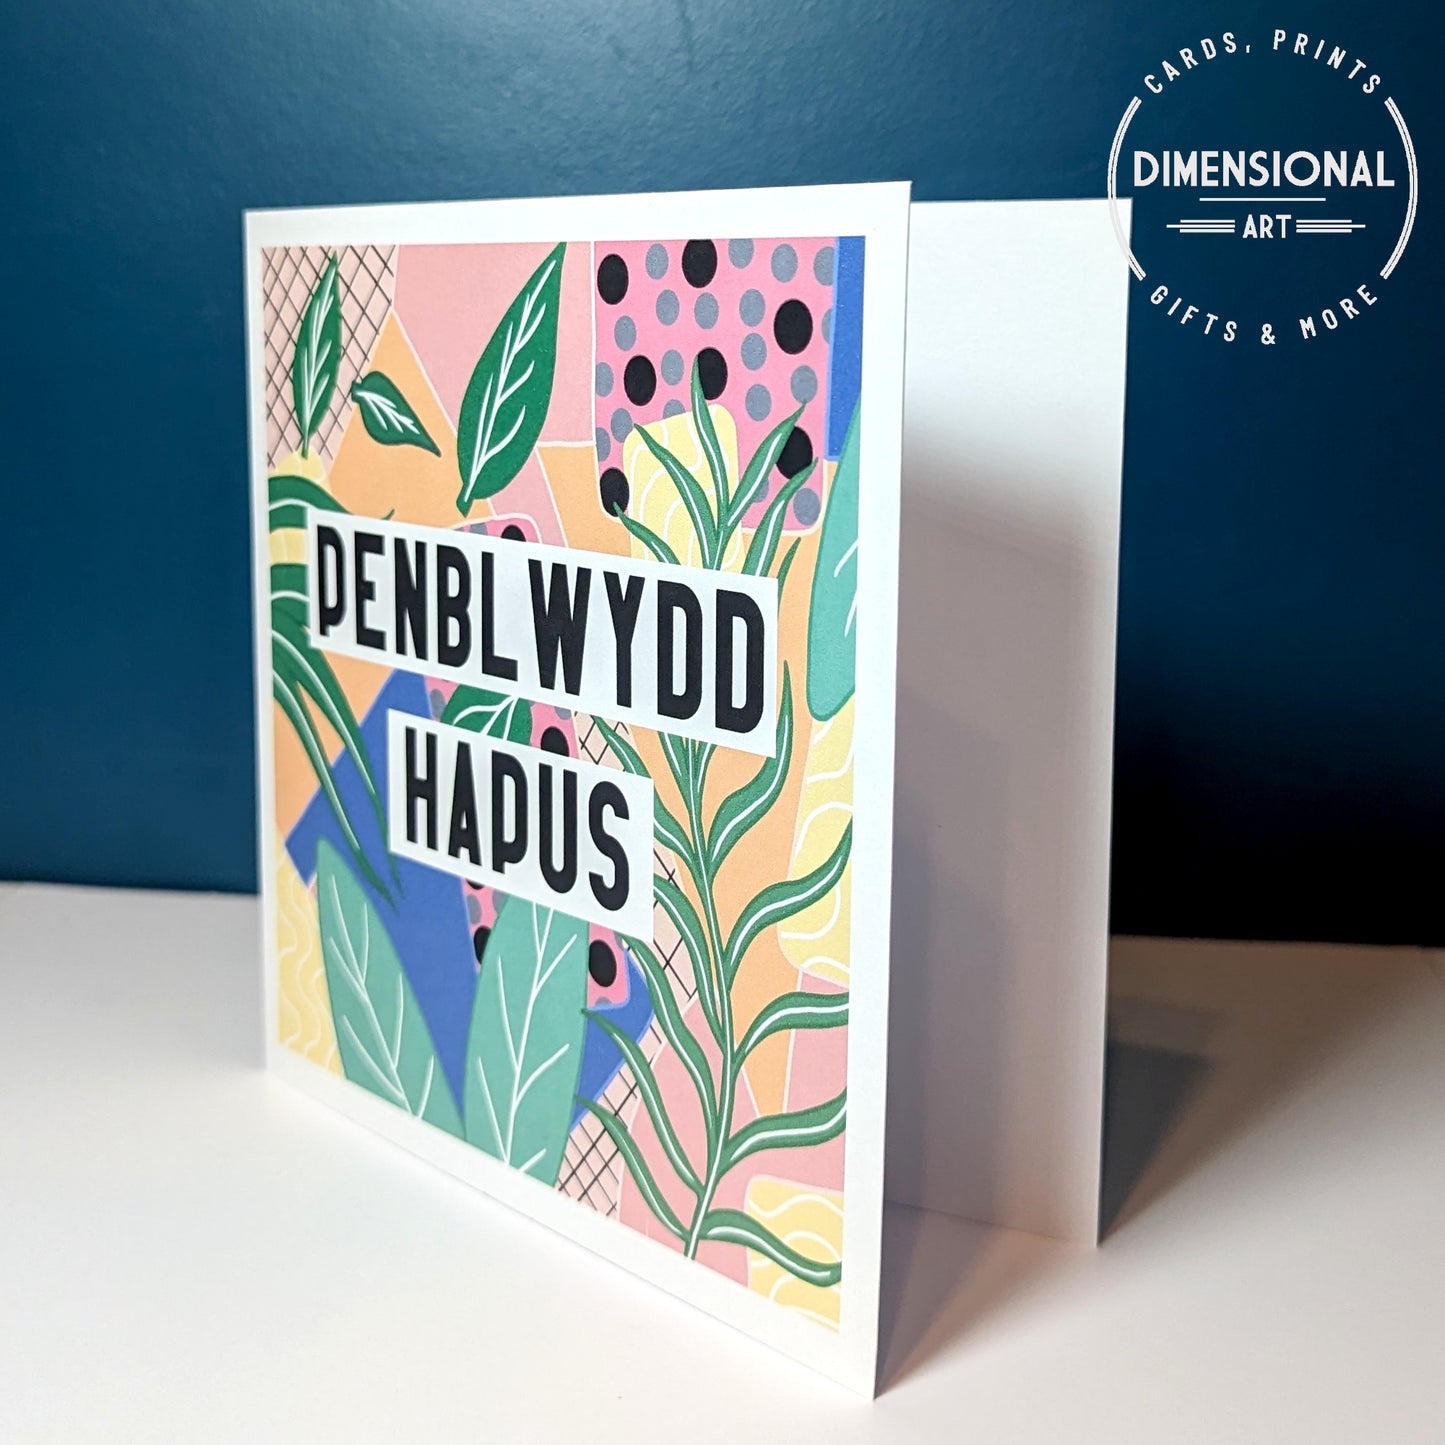 Jungle Penblwydd Hapus (Birthday Card) - Welsh Card